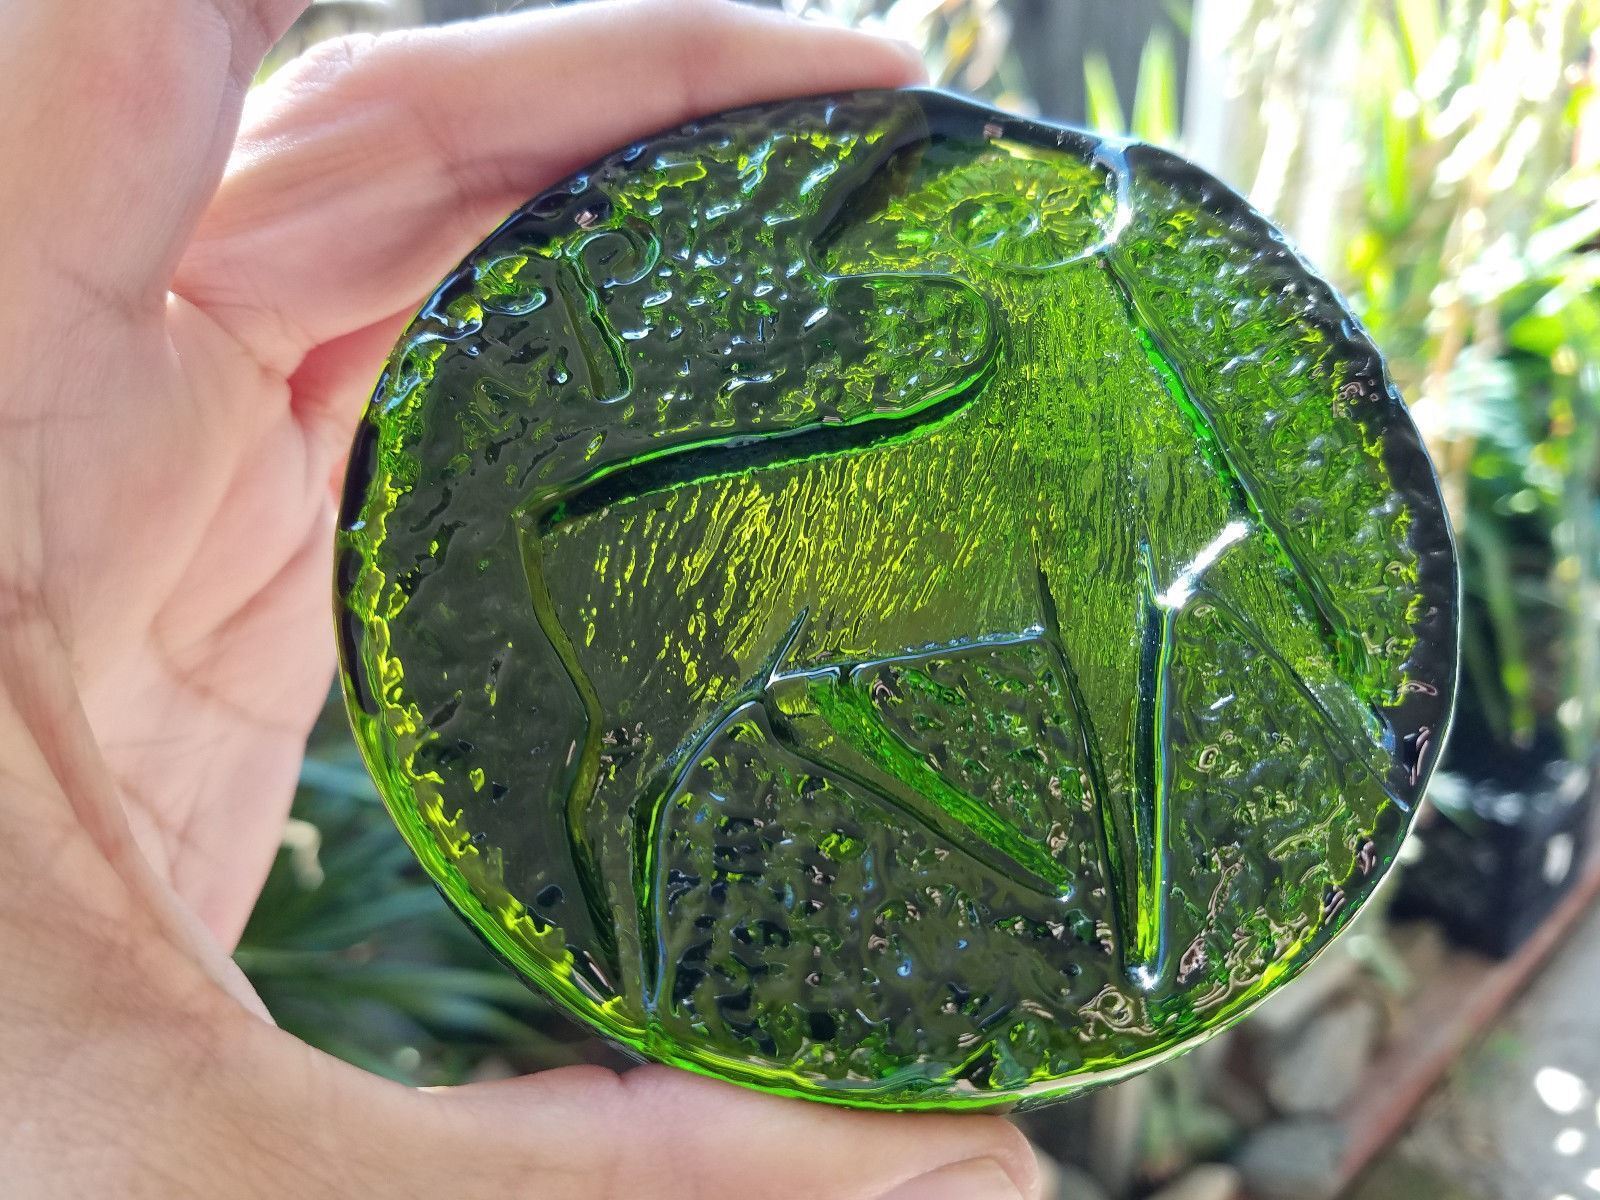 Green BLENKO Handcraft Art Glass Paperweights Lot Of 6 Без бренда - фотография #6